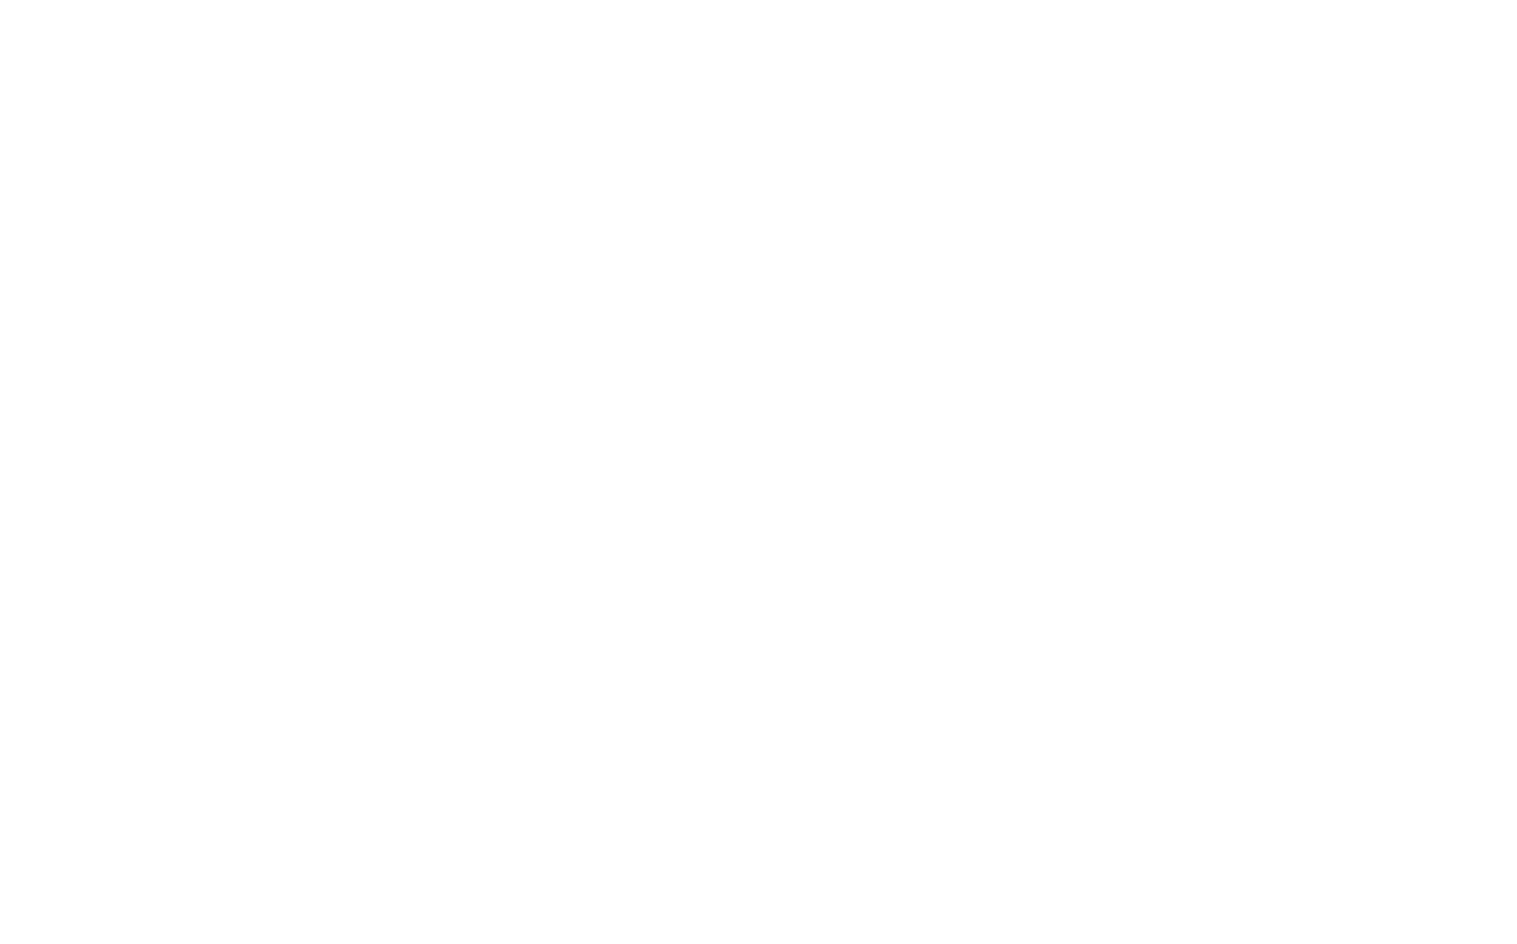 TJX Companies logo pour fonds sombres (PNG transparent)